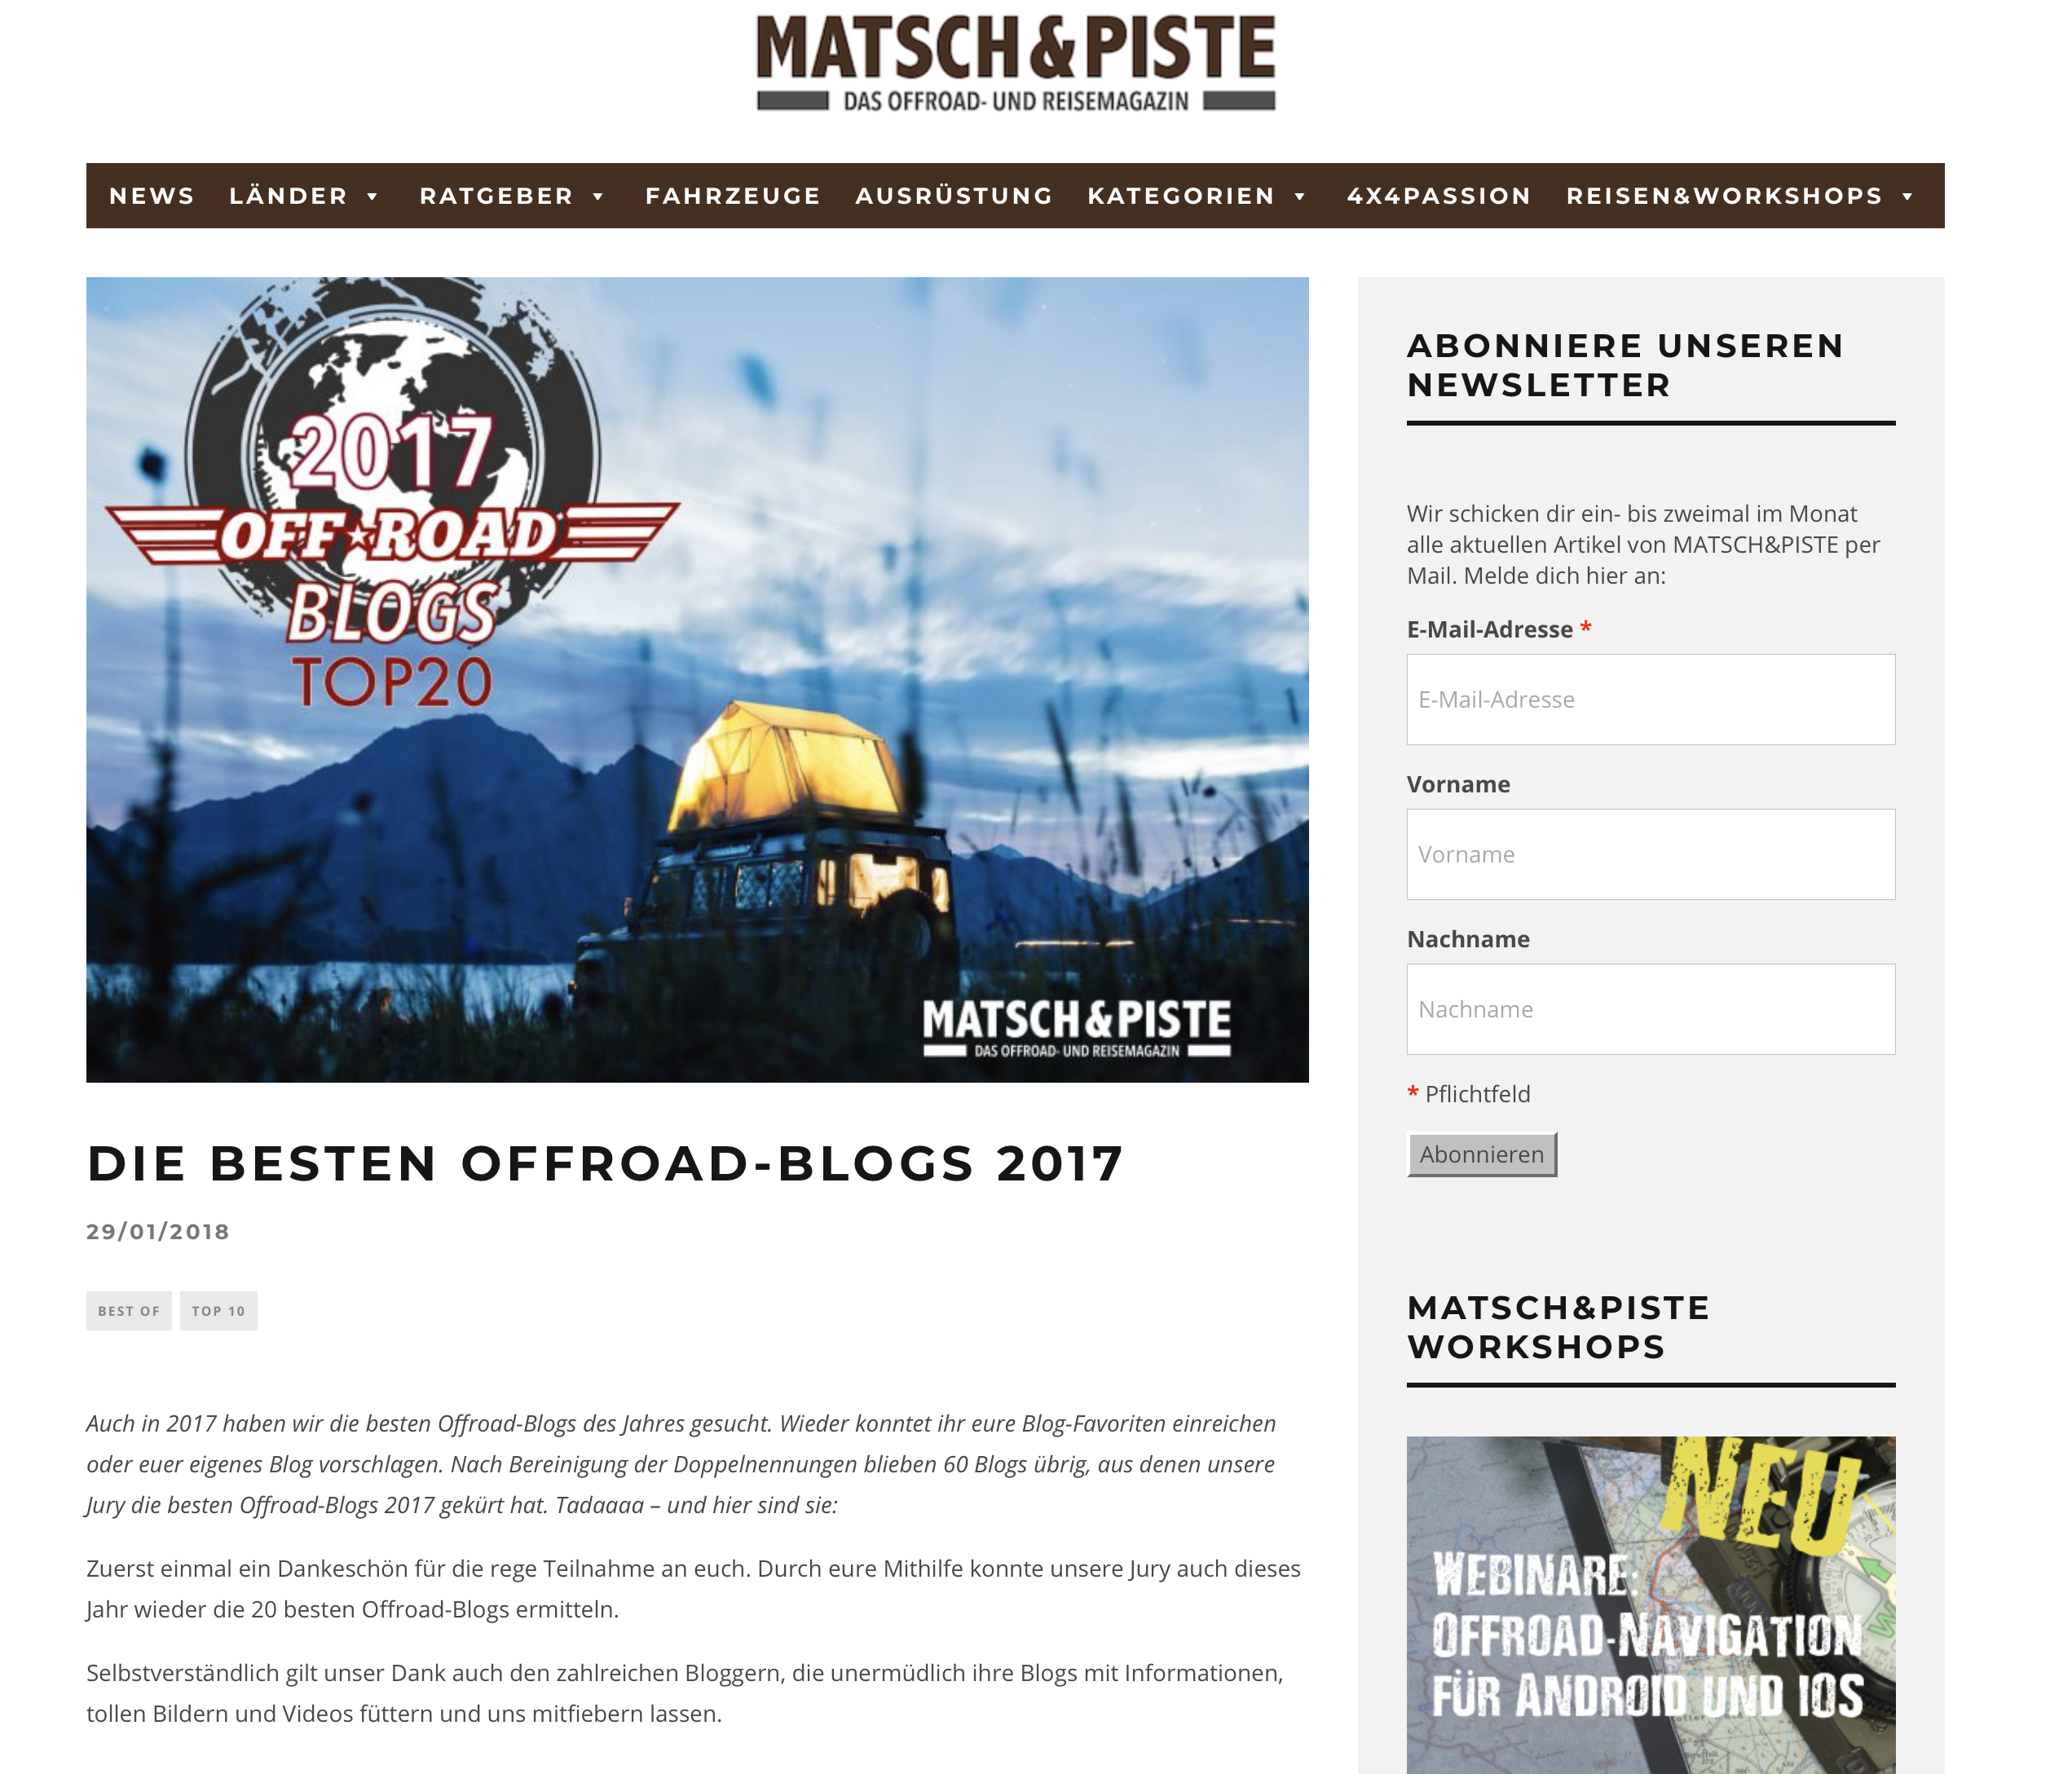 https://matsch-und-piste.de/die-besten-offroad-blogs-2017/